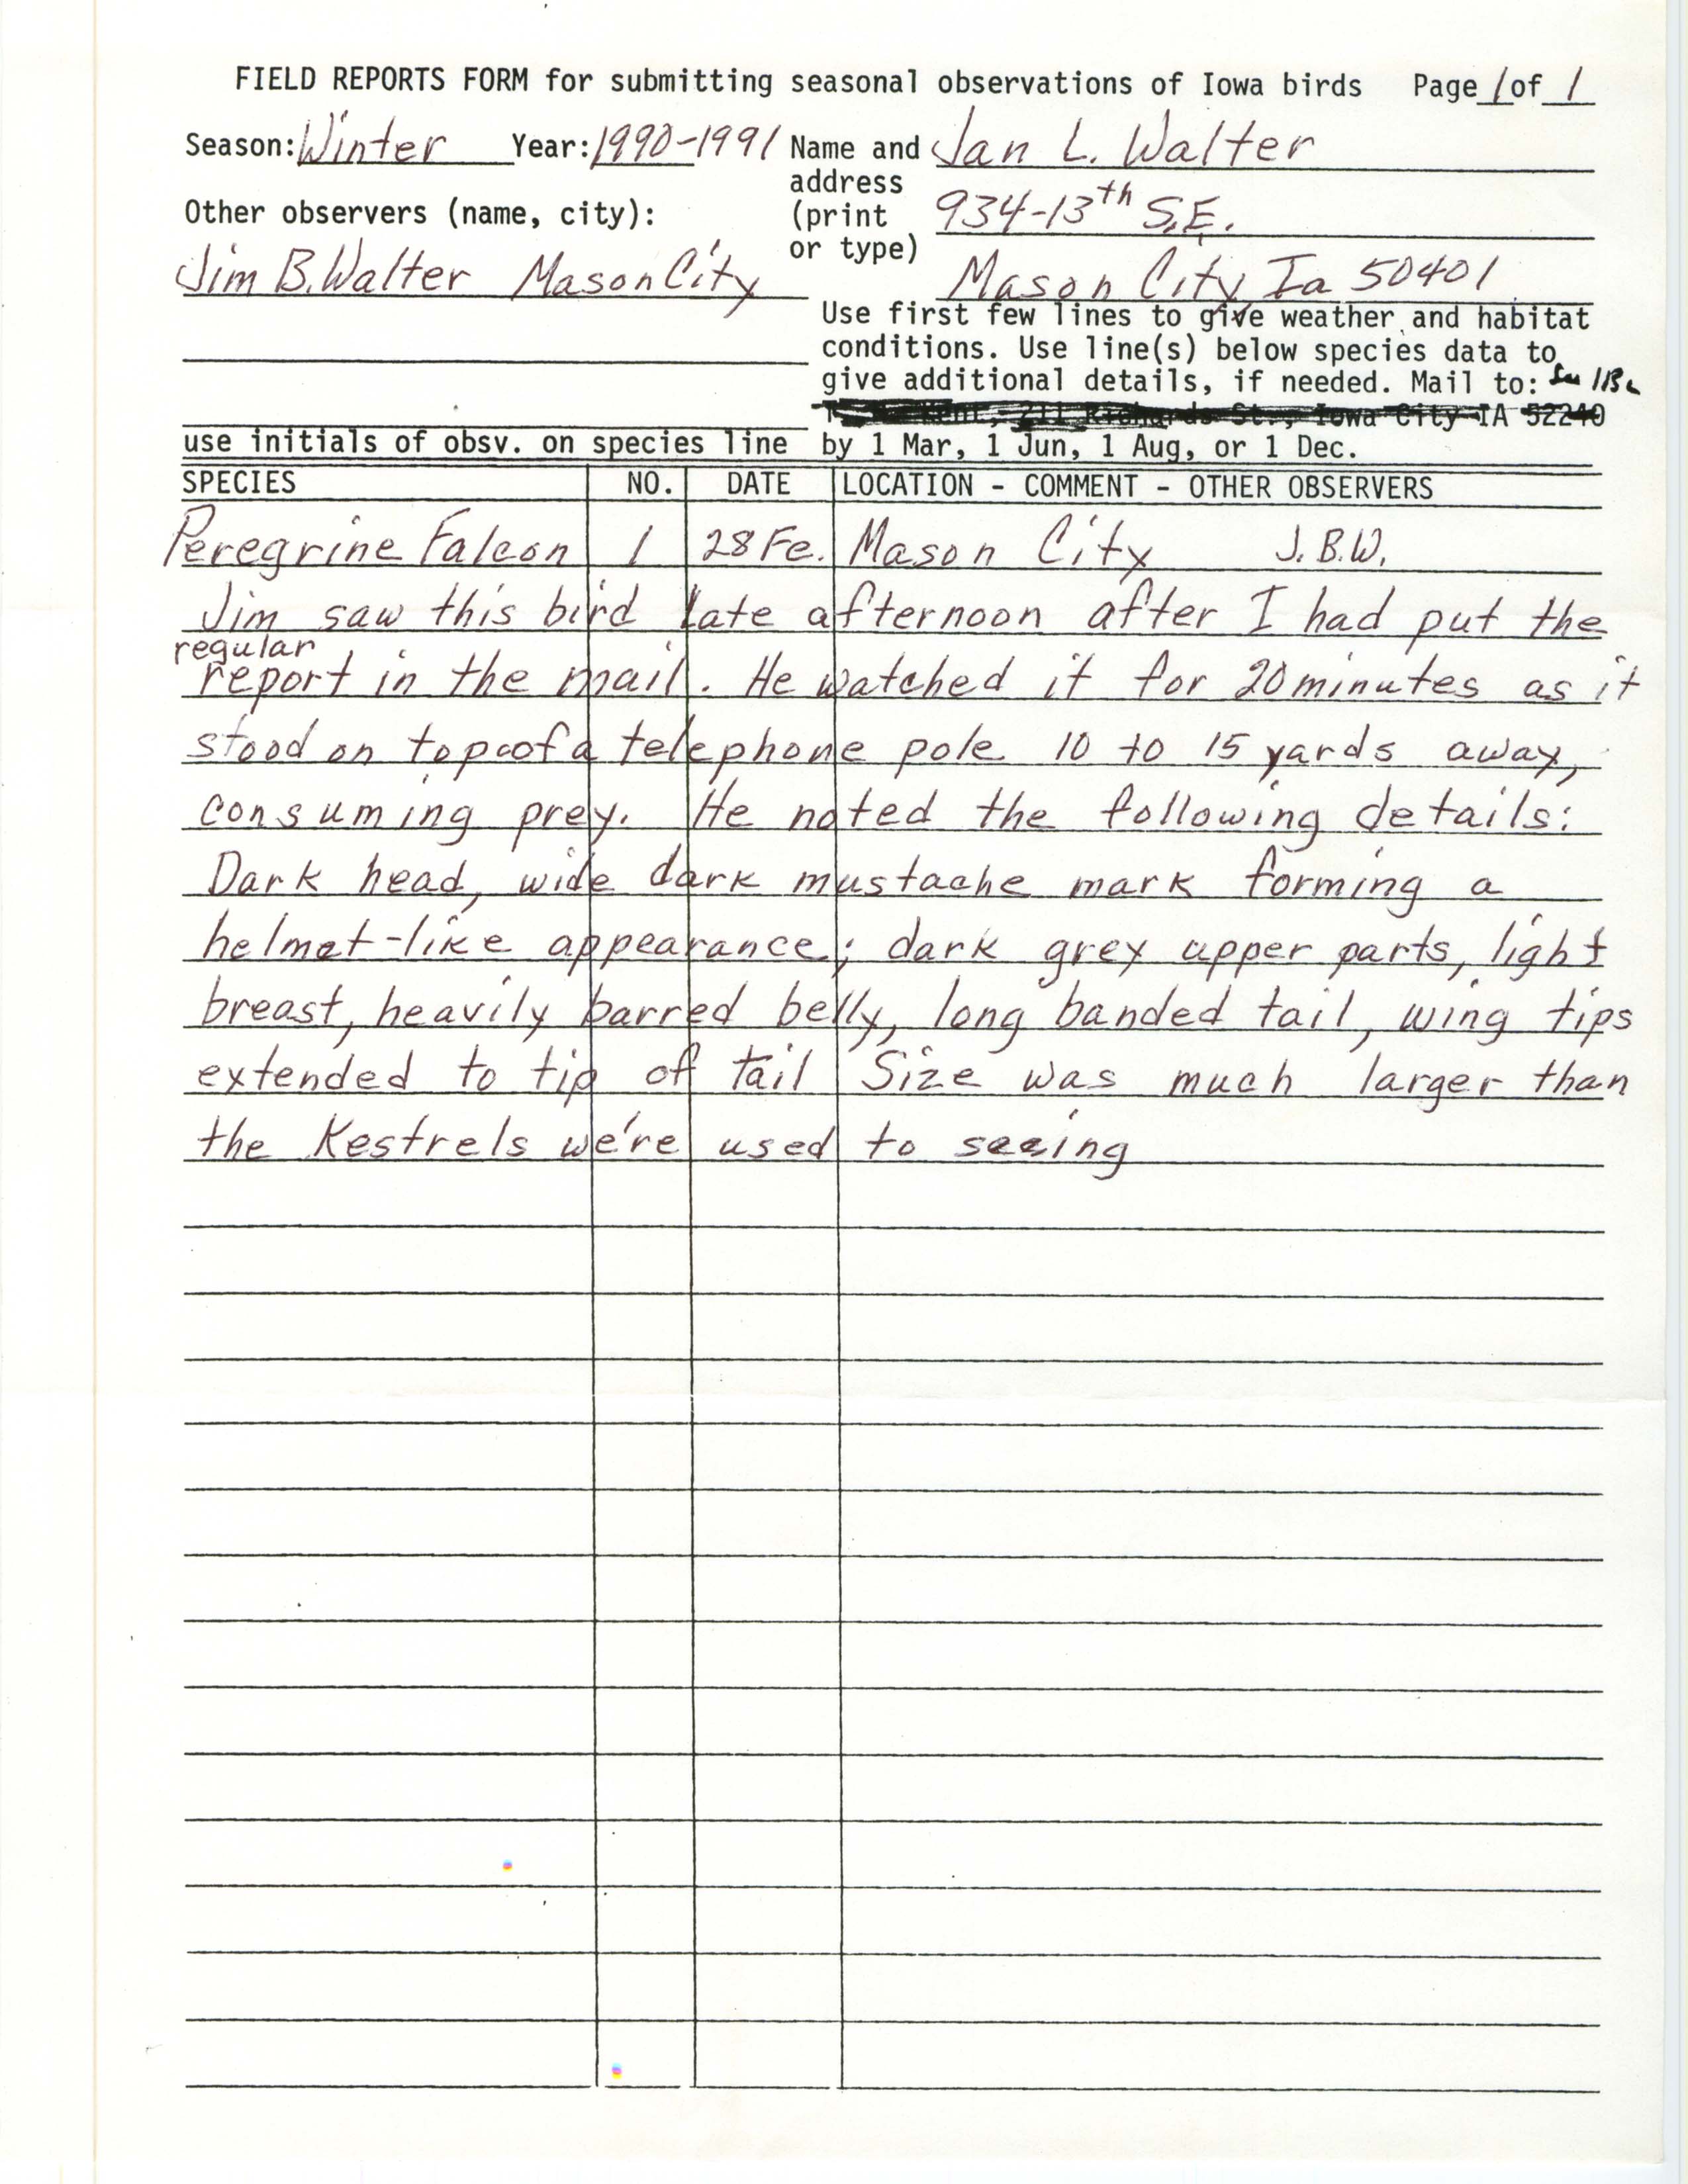 Rare bird documentation form for Peregrine Falcon at Mason City, 1991